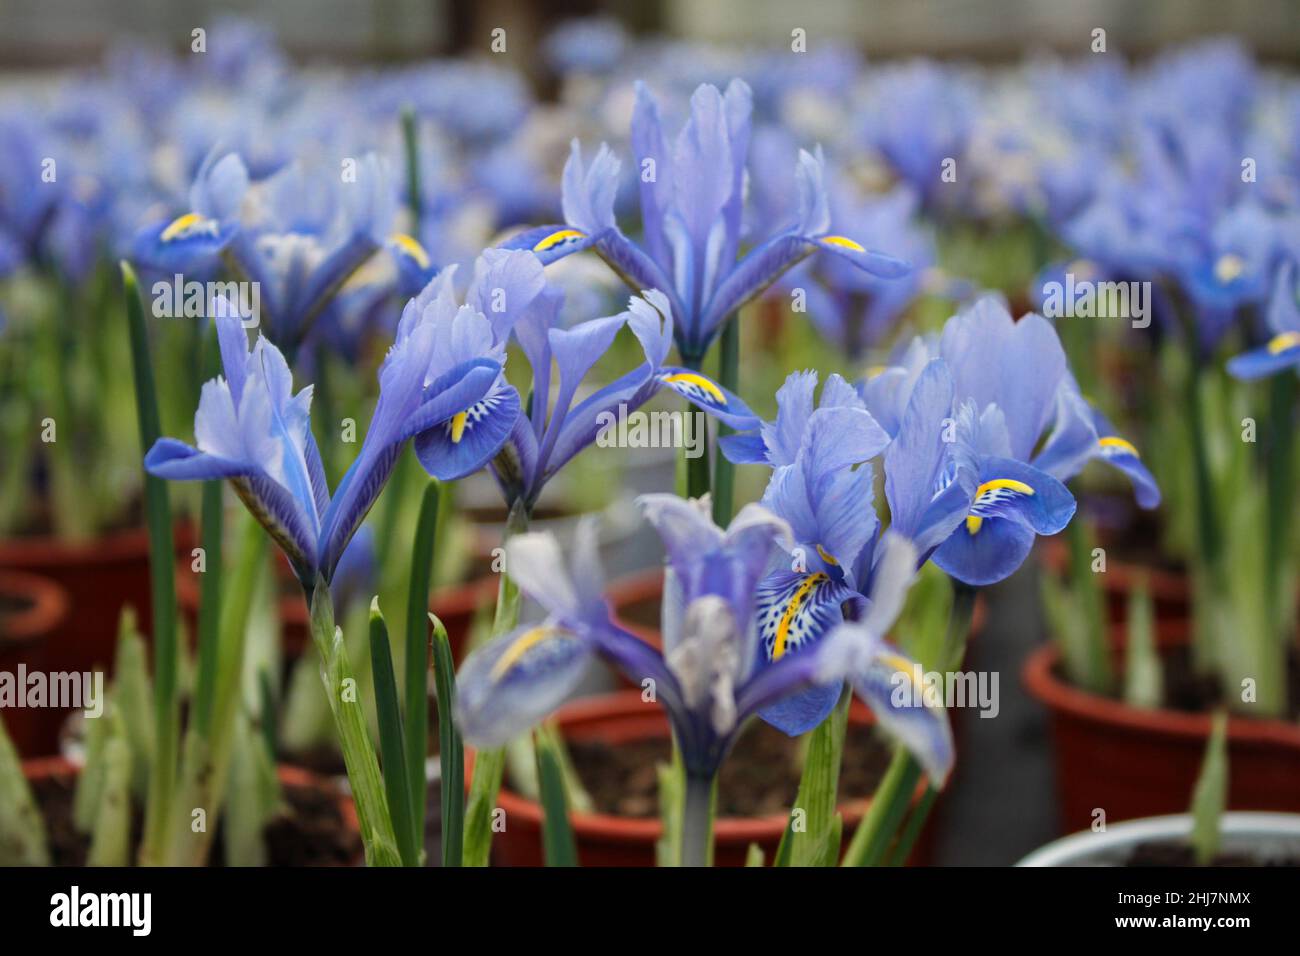 Gros plan de petites pousses d'iris avec fleurs bleues dans des pots dans la serre à vendre. Banque D'Images